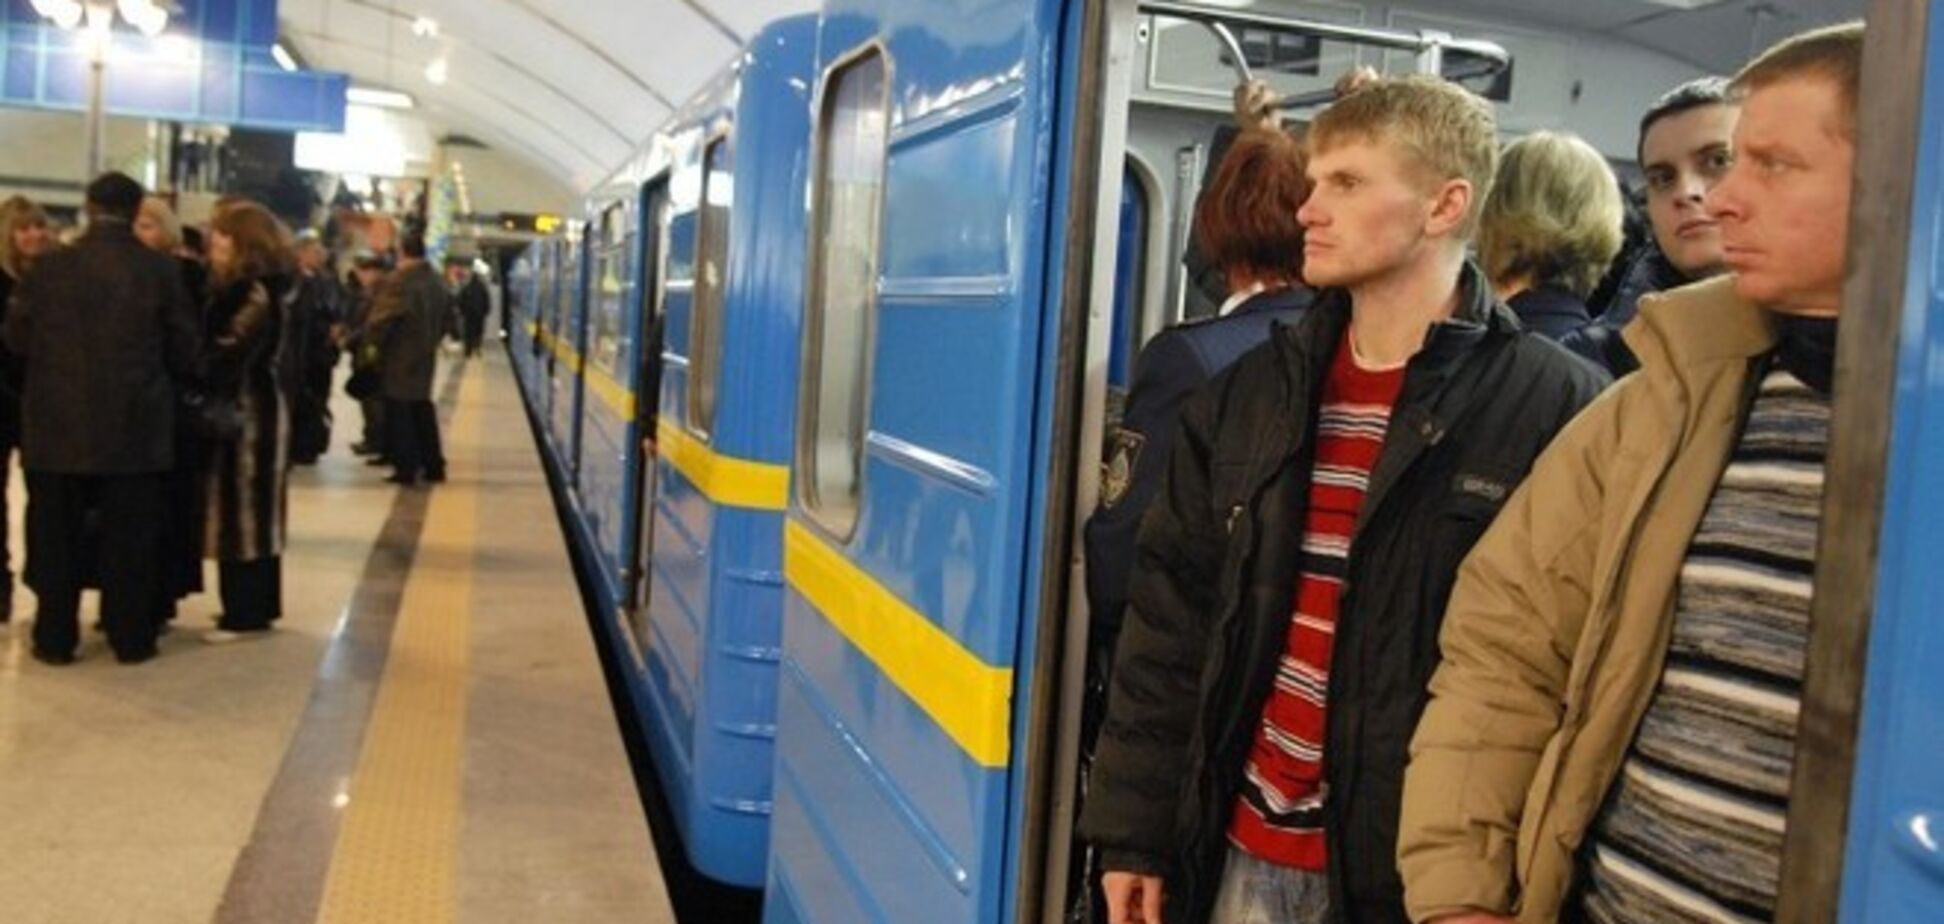 Зам Кличко не считает поездку в метро за 4 грн очень дорогой